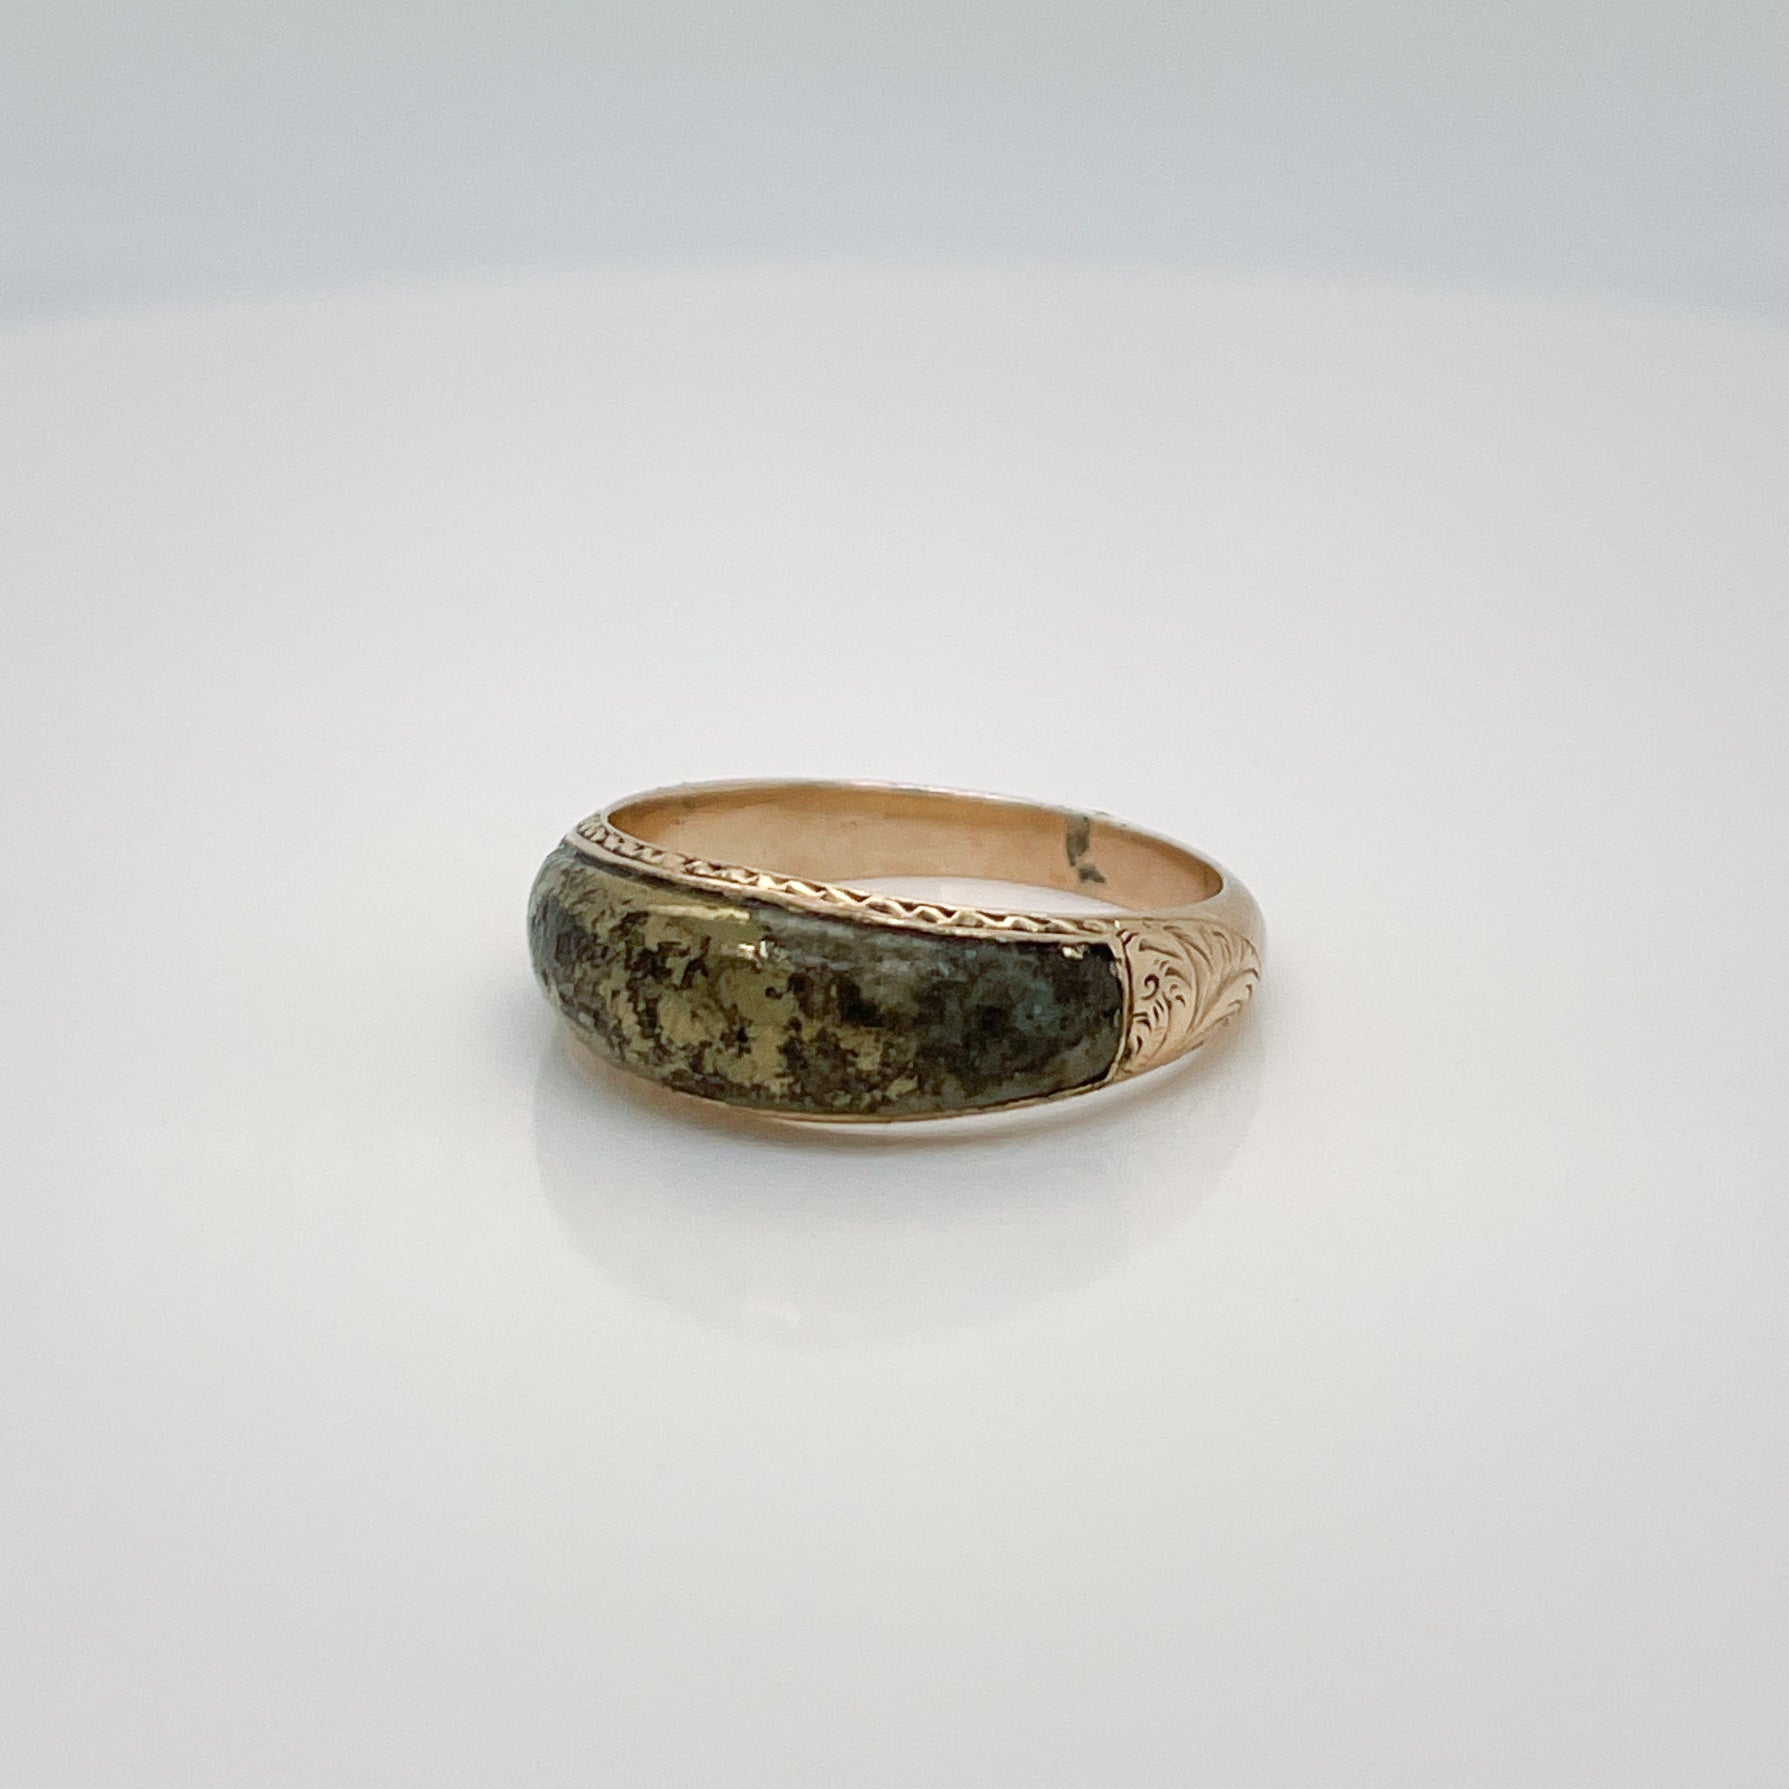 Ein schöner antiker viktorianischer Ring.

Aus 14 Karat Gelbgold.

Mit einem polierten, geformten Pyrit- (oder Goldquarz-) Cabochon eingelegt und mit geätztem und graviertem Dekor an den Seiten und Schultern verziert.

Einfach ein schöner